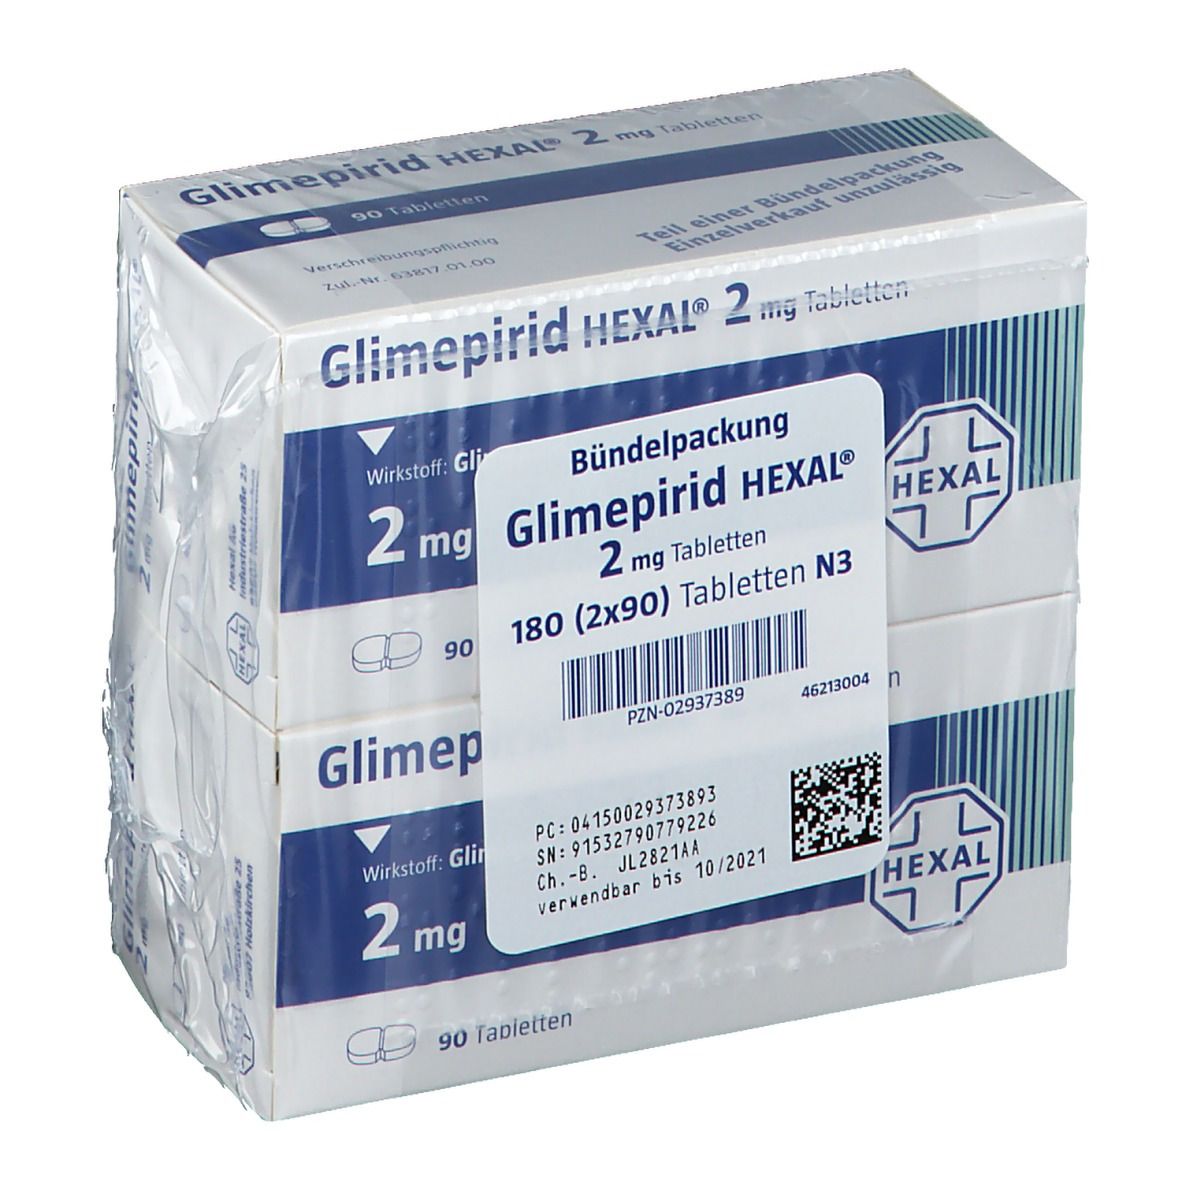 Glimepirid HEXAL® 2 mg